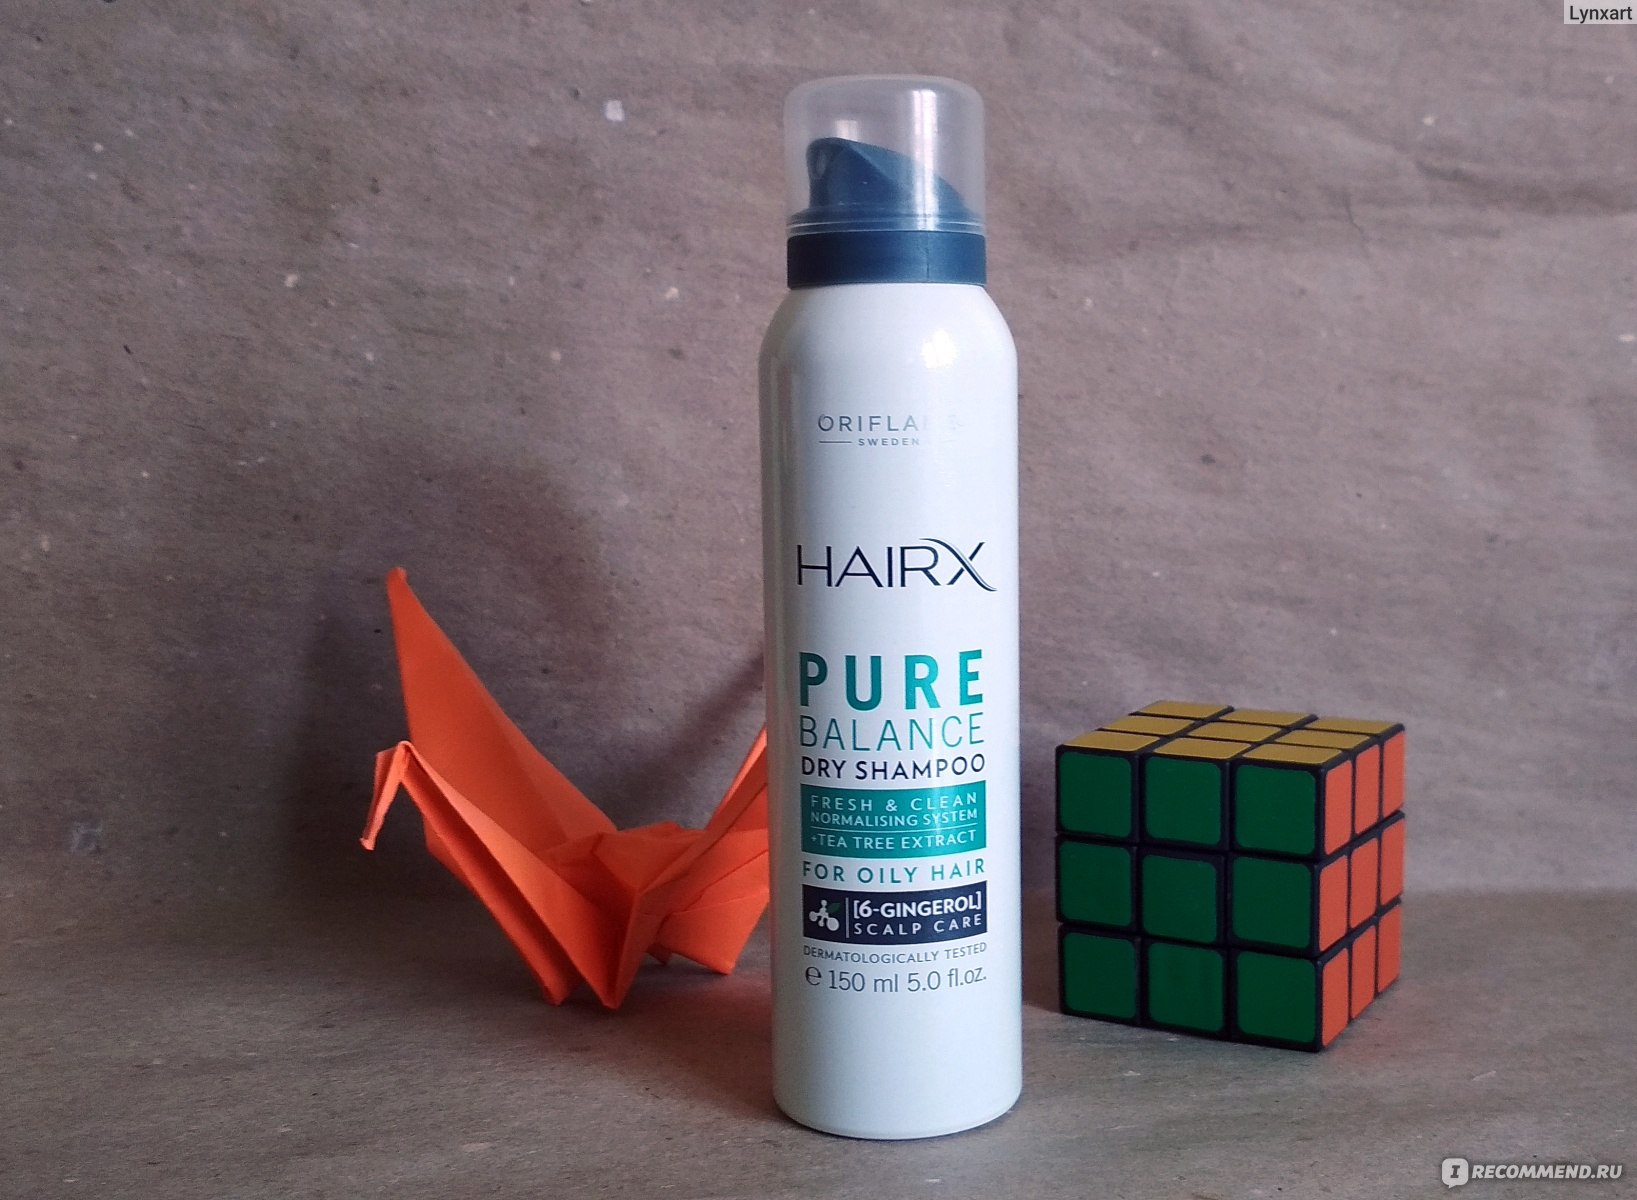 Как пользоваться сухим шампунем для волос от орифлейм